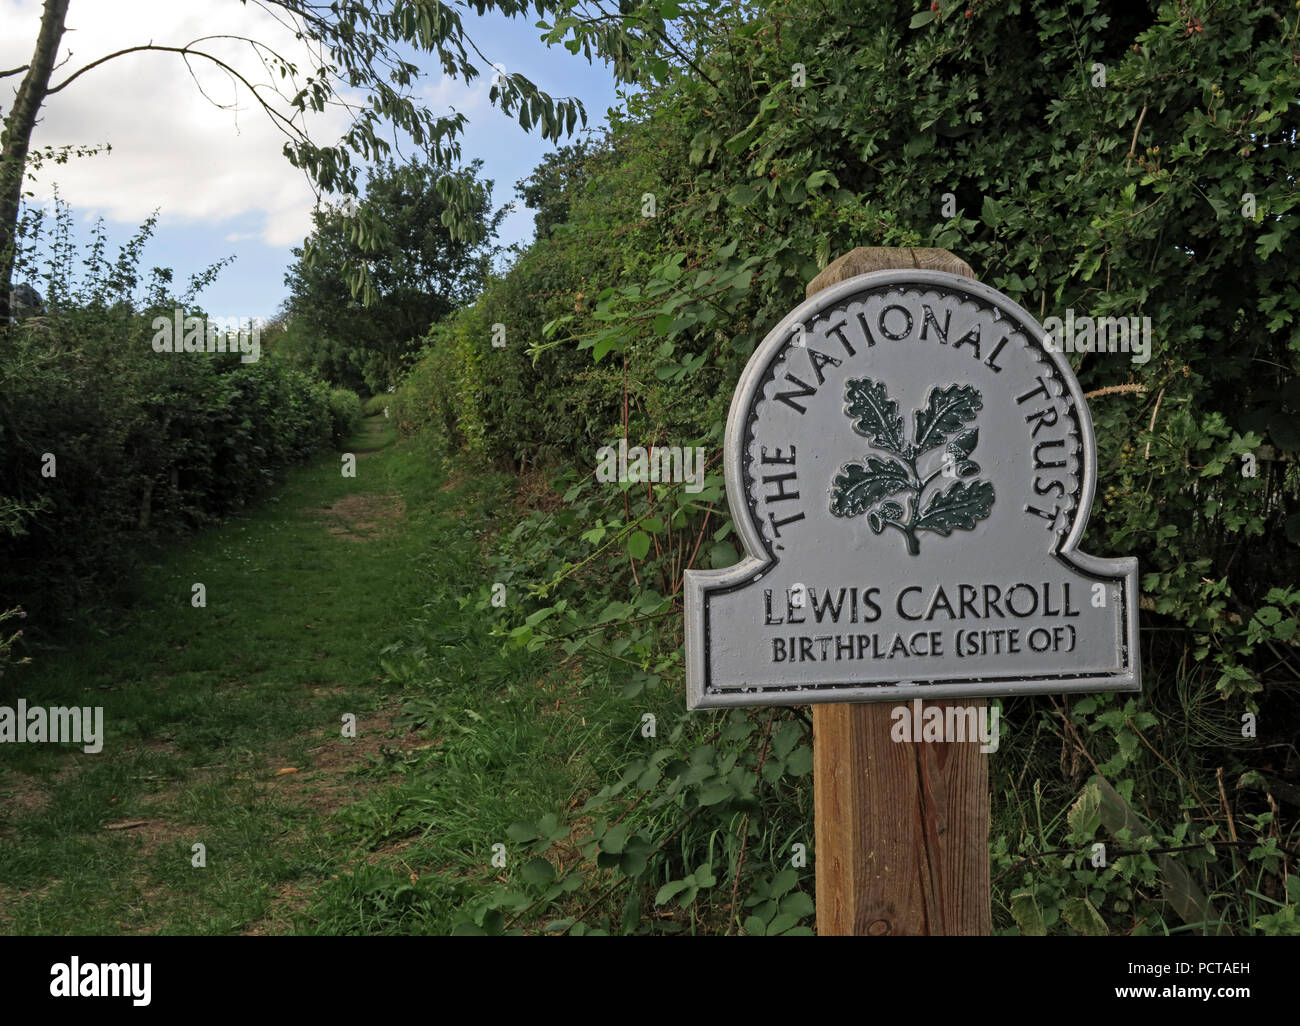 Chemin de Lewis Carroll de naissance, Morphany Lane, Daresbury, Warrington, Cheshire, du sud au nord ouest de l'Angleterre, Royaume-Uni Banque D'Images